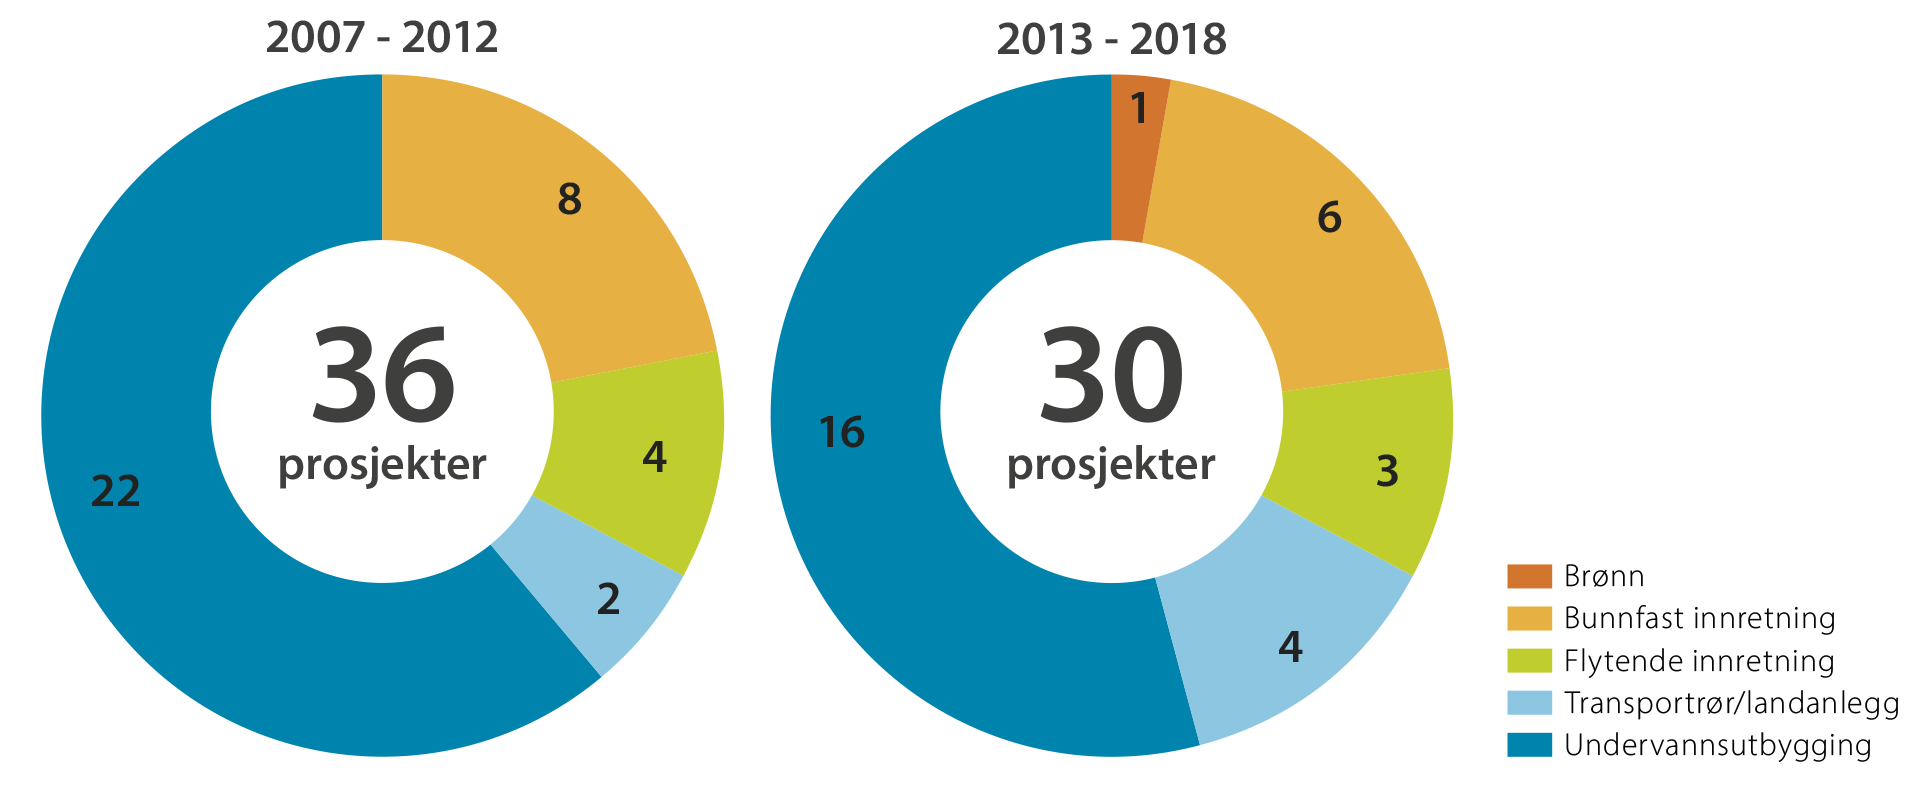 Figur 4 Prosjekter fordelt på utbyggingsløsning og periode. I 2007-2012 ble det besluttet 36 prosjekter. I 2013-2018 ble det besluttet 30 prosjekter.